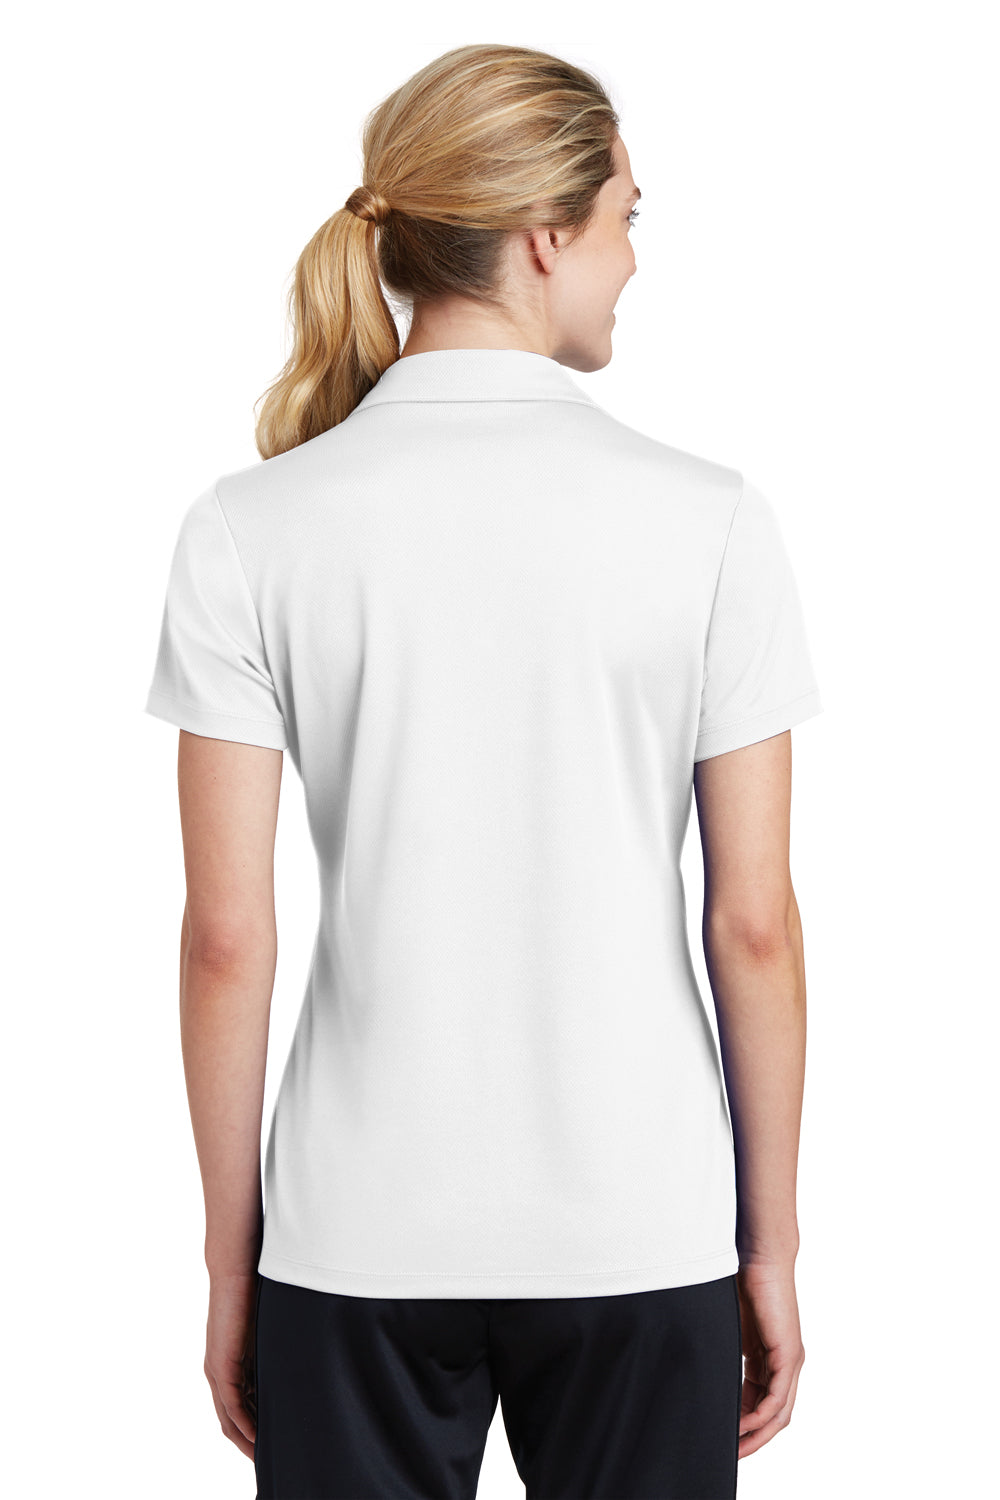 Sport-Tek LST640 Womens RacerMesh Moisture Wicking Short Sleeve Polo Shirt White Back